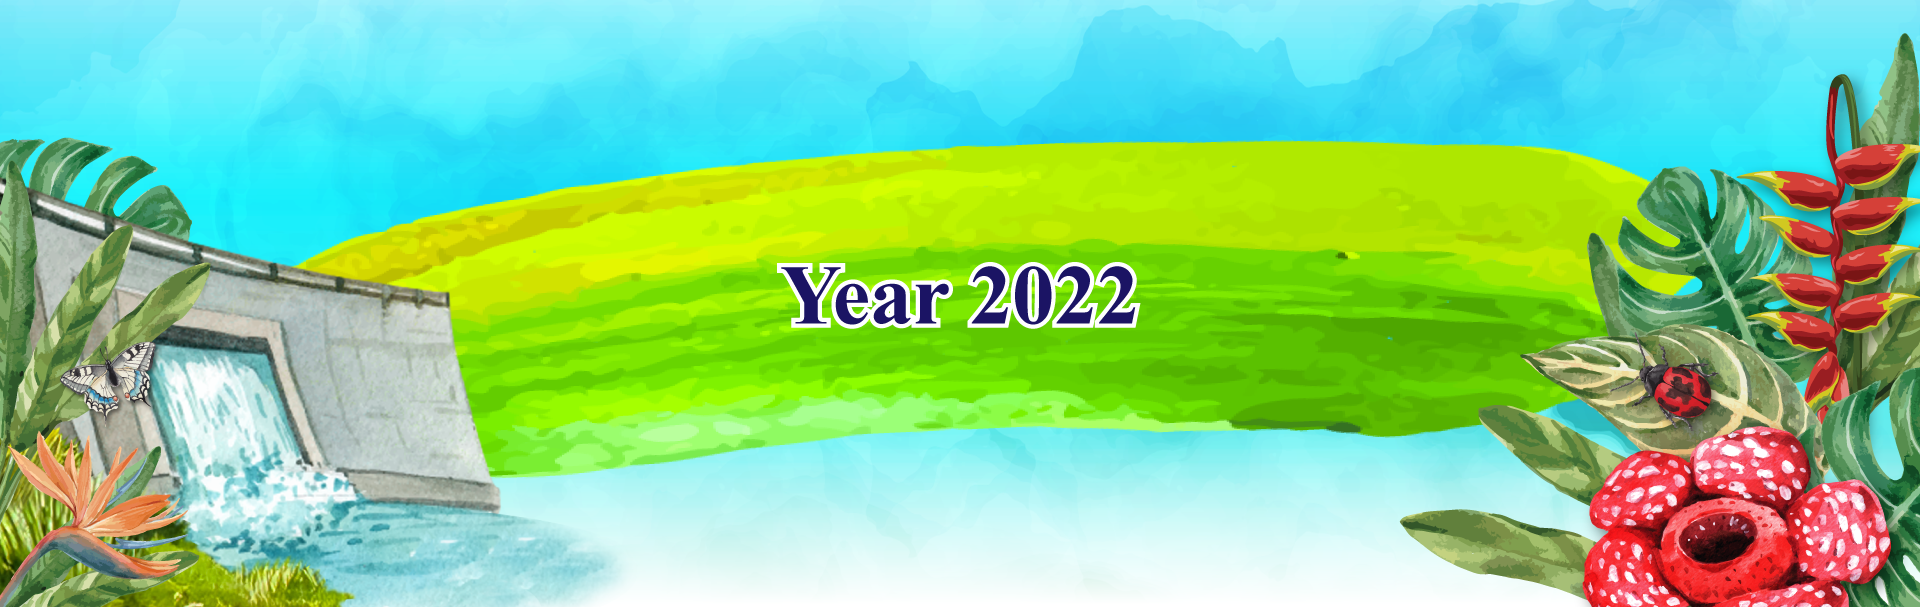 year2022-header-bg